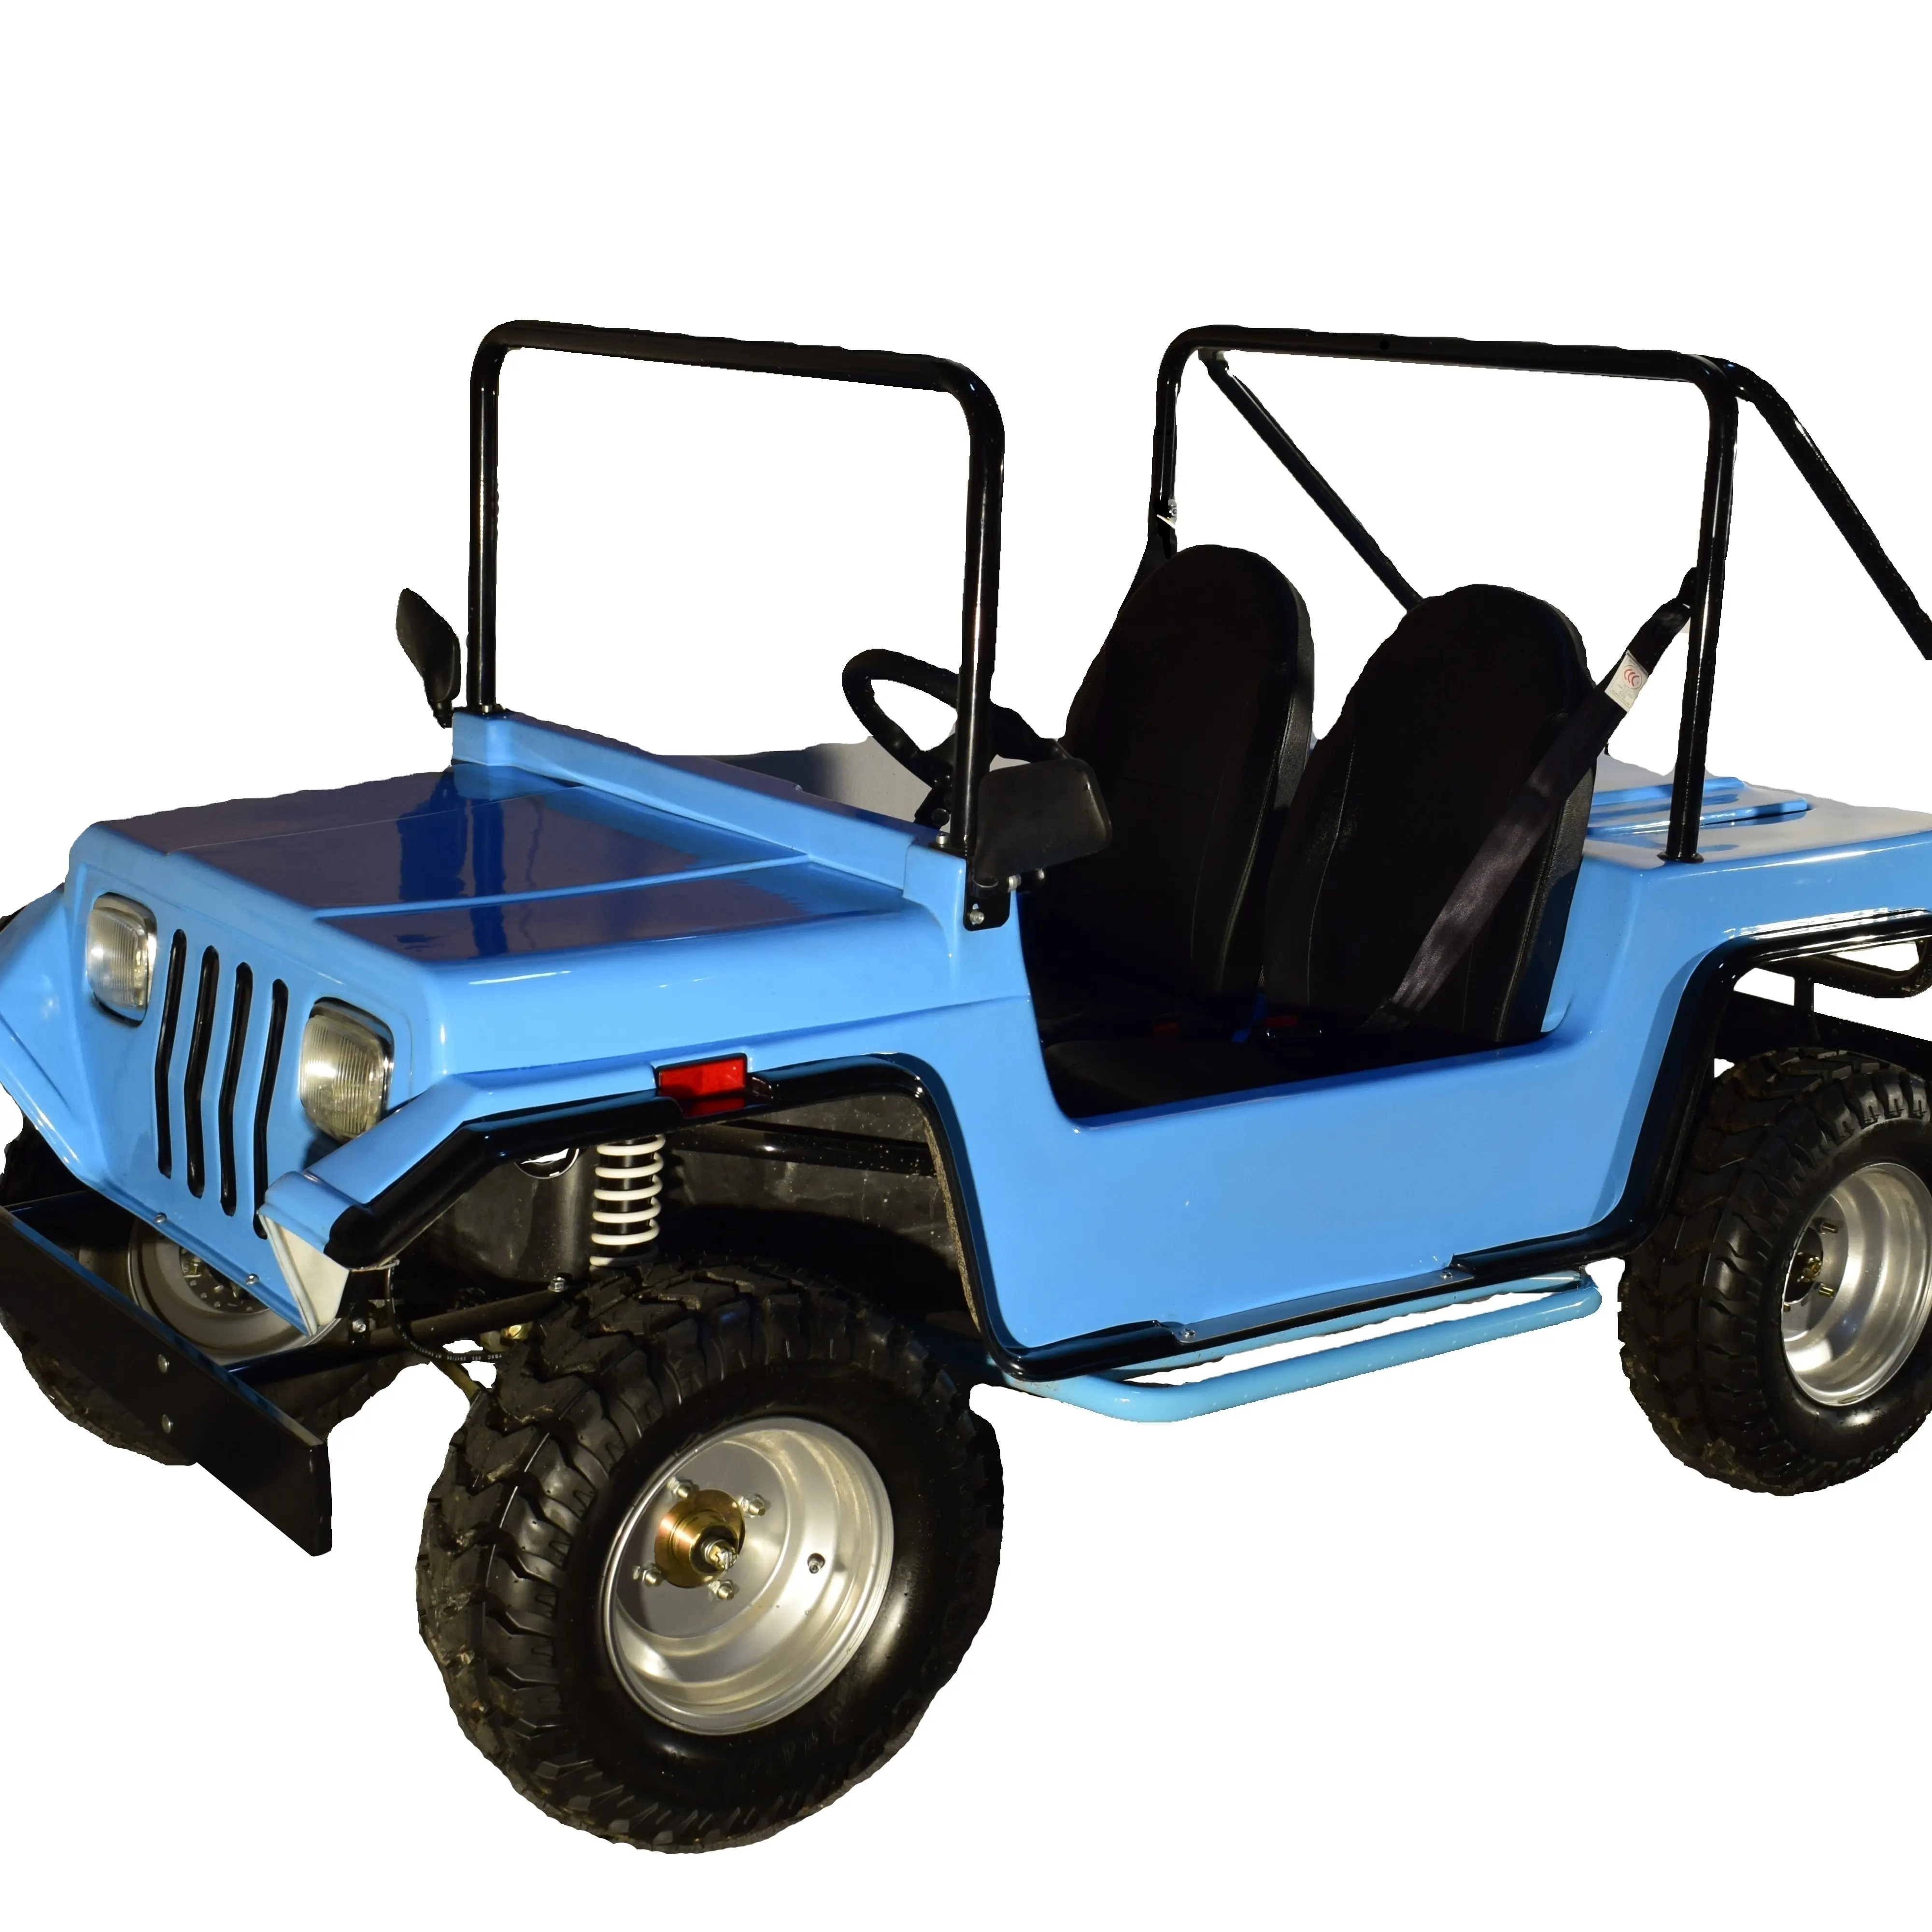 Jeep Mountain Car-Coche de gasolina de 200cc para adultos, vehículo de dos ruedas con tracción en las dos ruedas, Para recreación